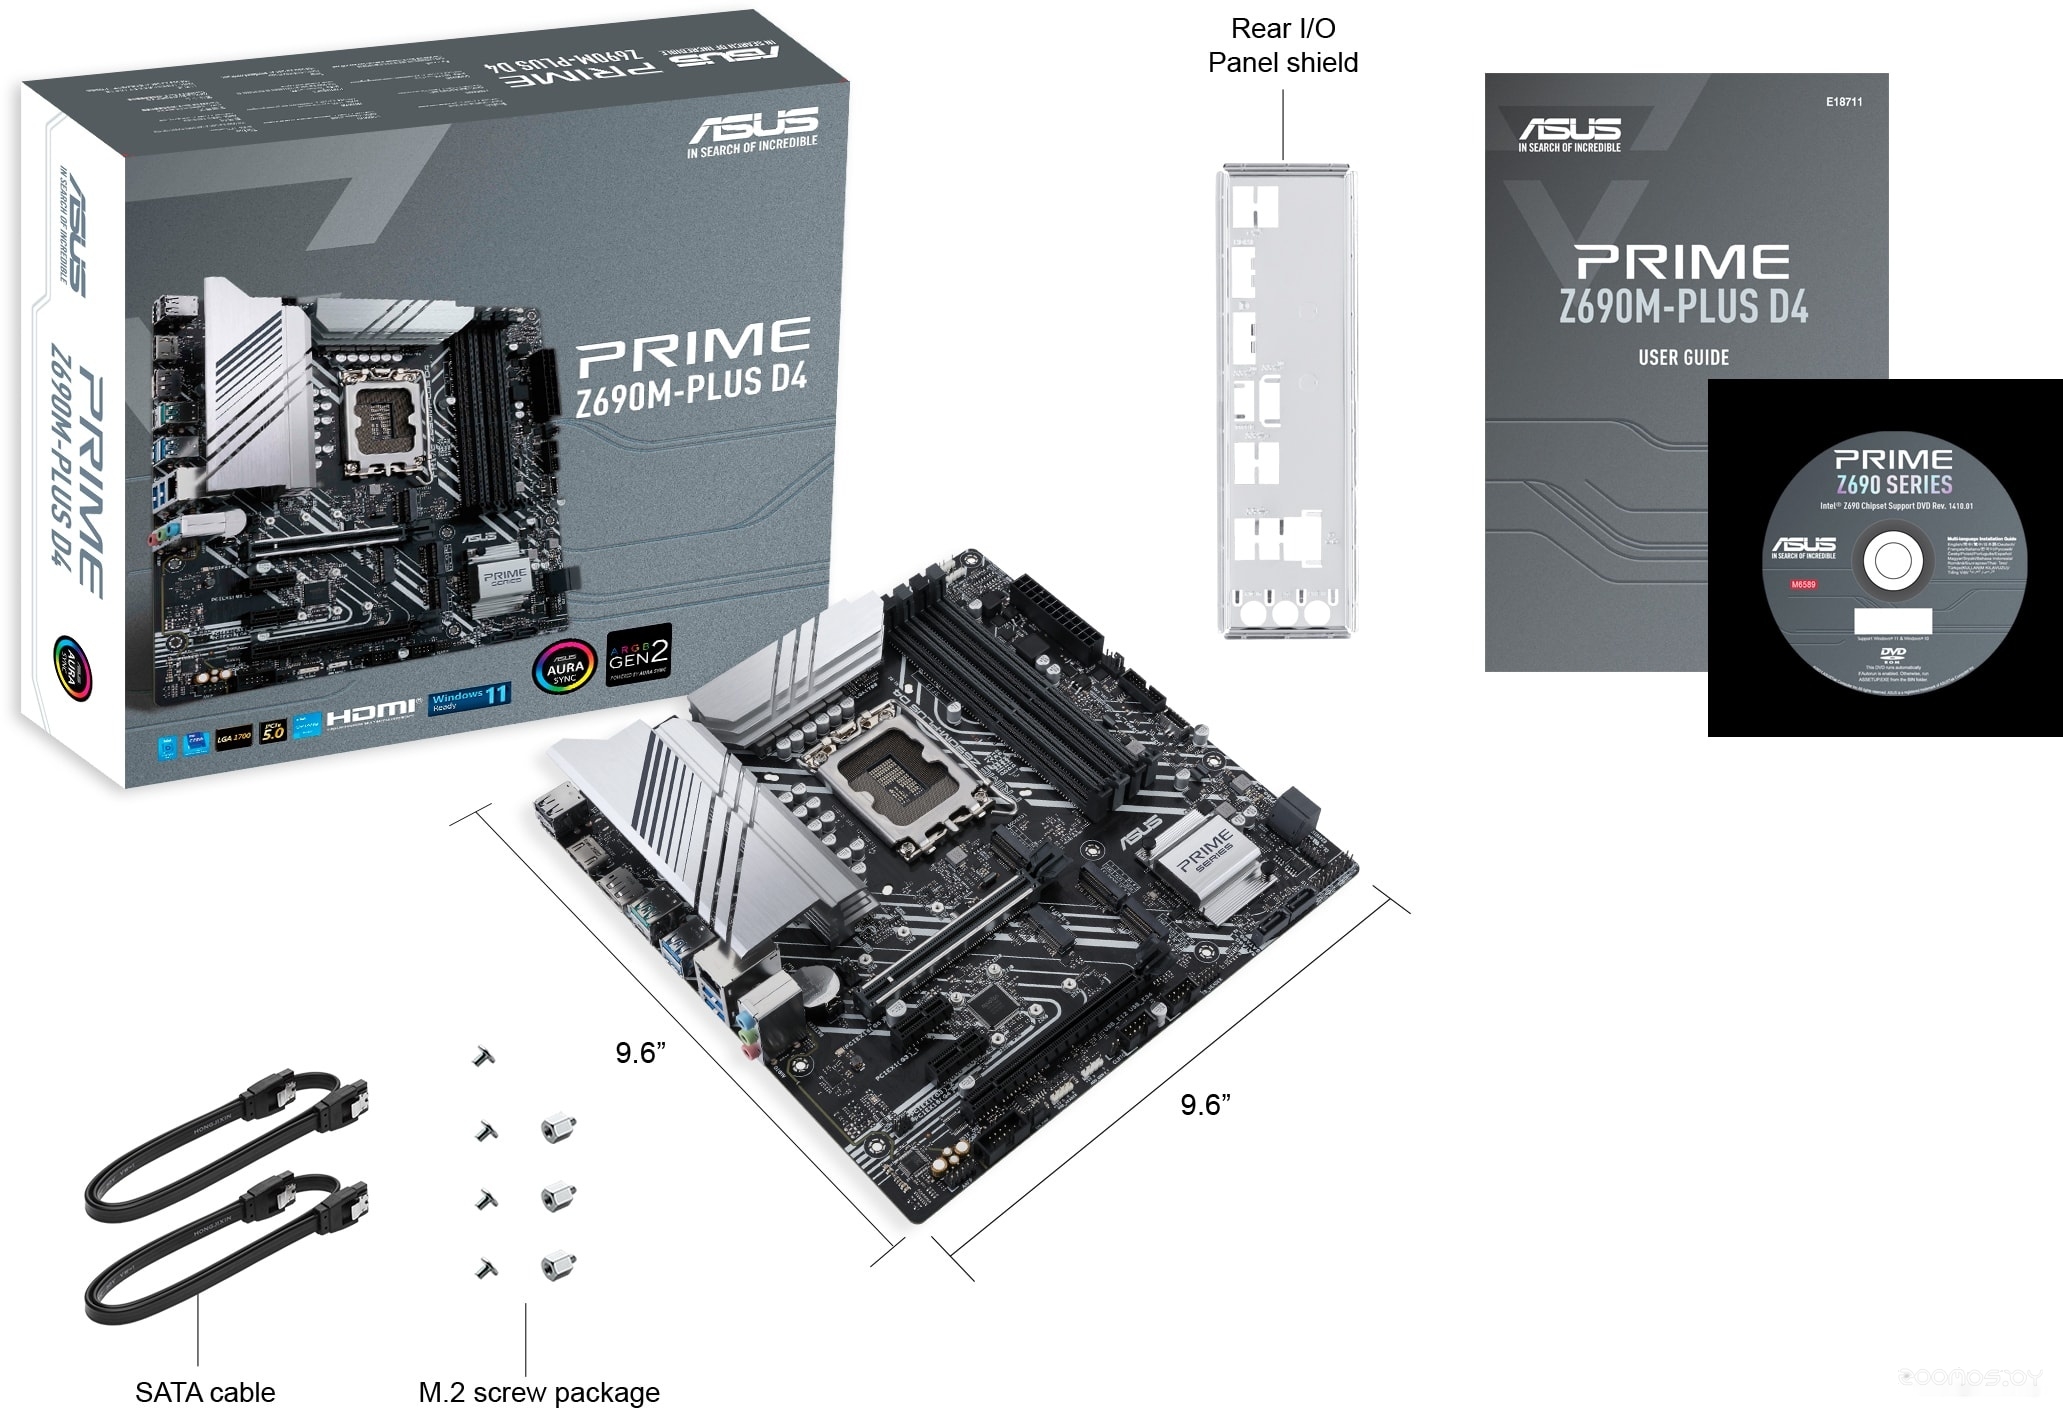   Asus Prime Z690M-PLUS D4     